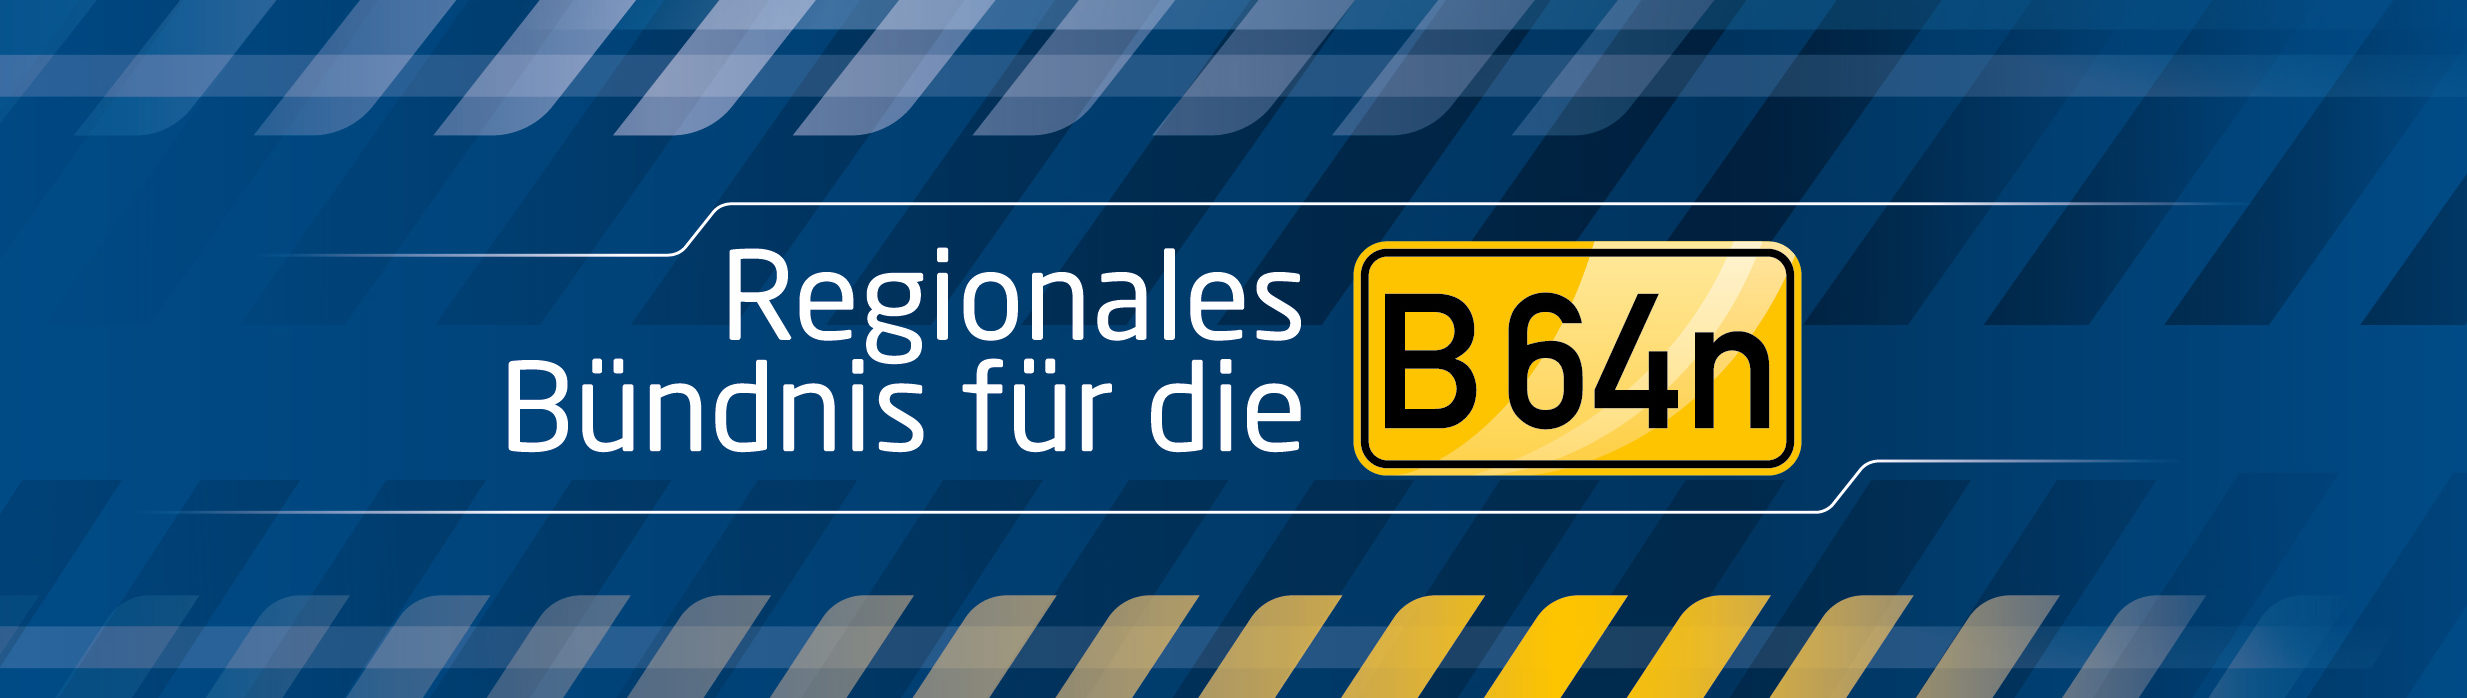 Regionales Bündnis für die B 64n